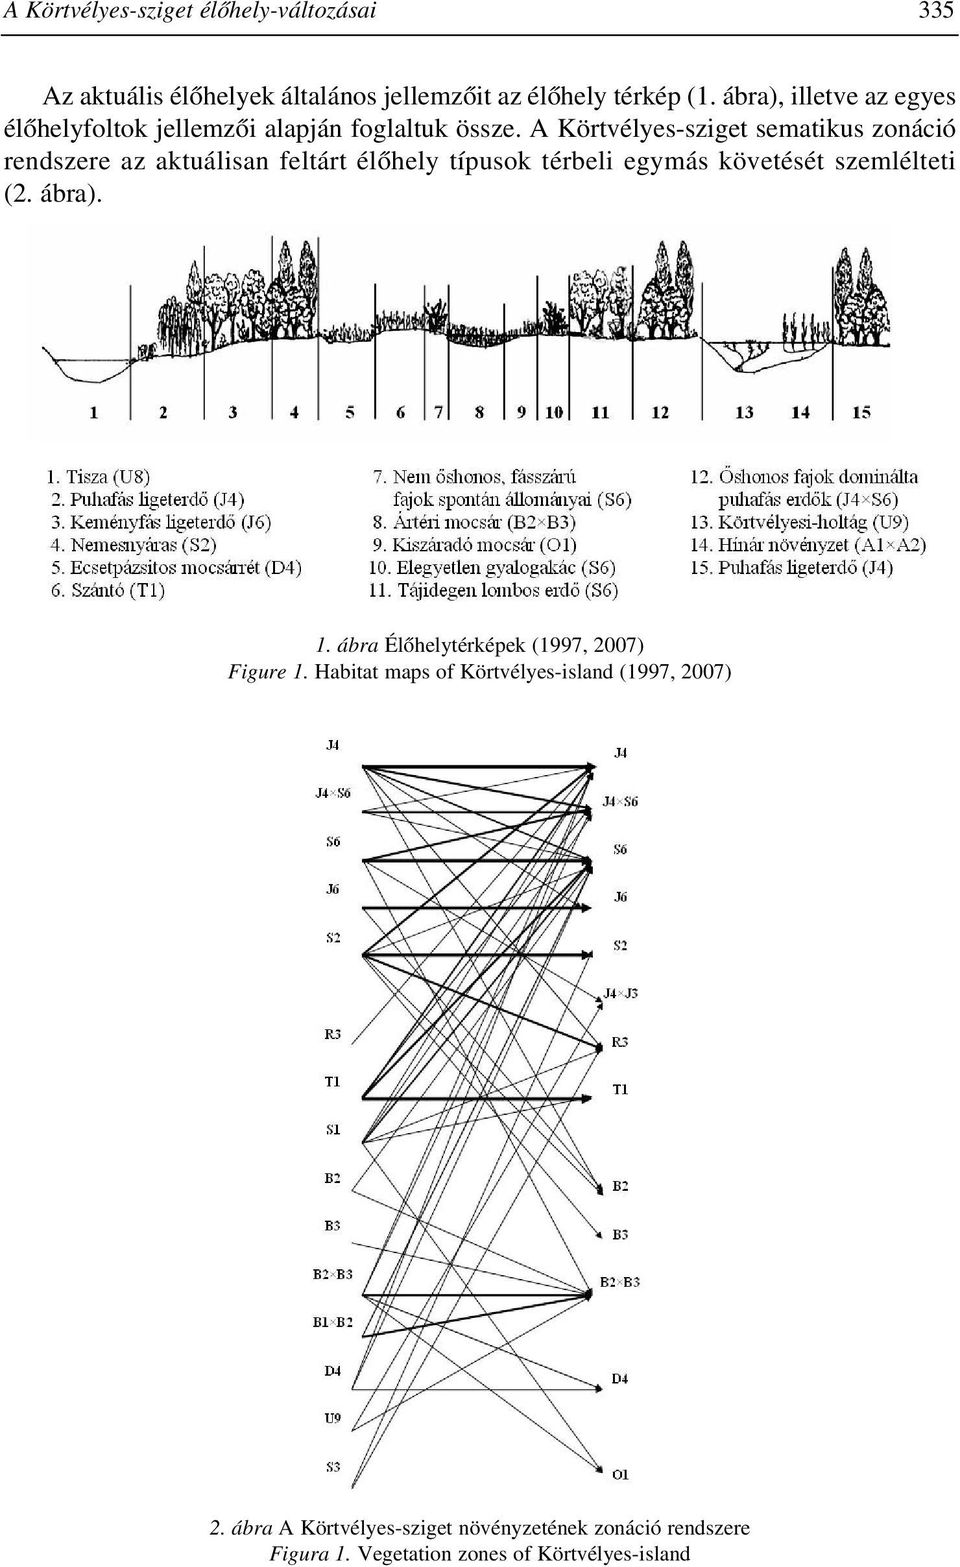 A Körtvélyes-sziget sematikus zonáció rendszere az aktuálisan feltárt élõhely típusok térbeli egymás követését szemlélteti (2.